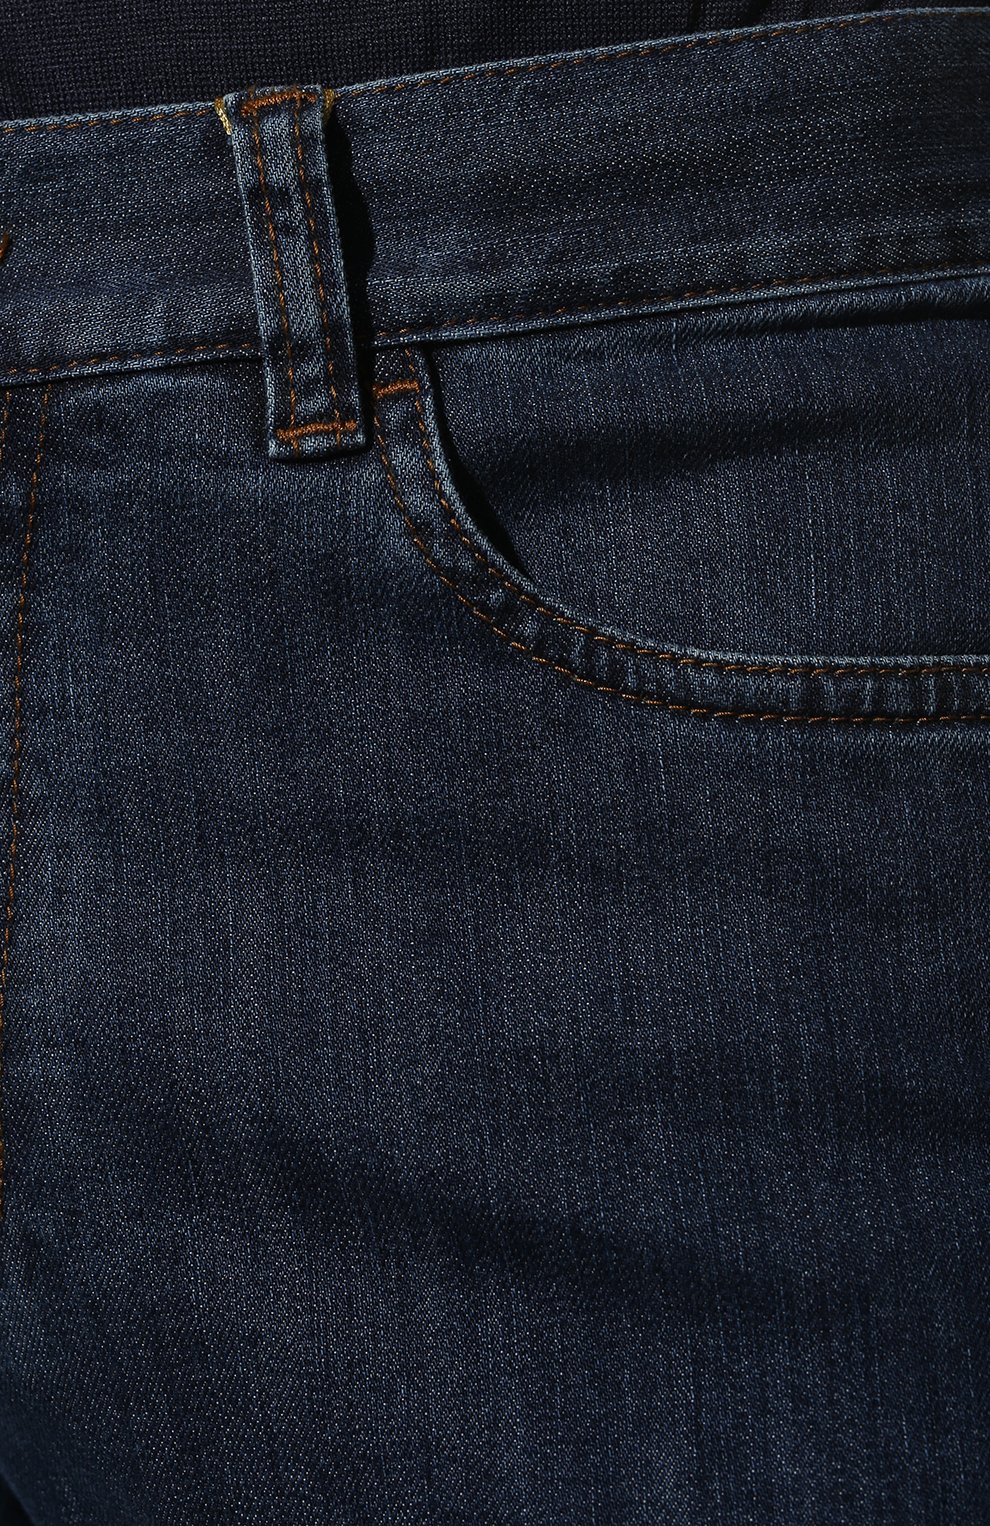 Мужские джинсы CANALI темно-синего цвета, арт. 91700/PD00018 | Фото 5 (Силуэт М (брюки): Прямые; Кросс-КТ: Деним; Длина (брюки, джинсы): Стандартные; Материал внешний: Хлопок, Деним)